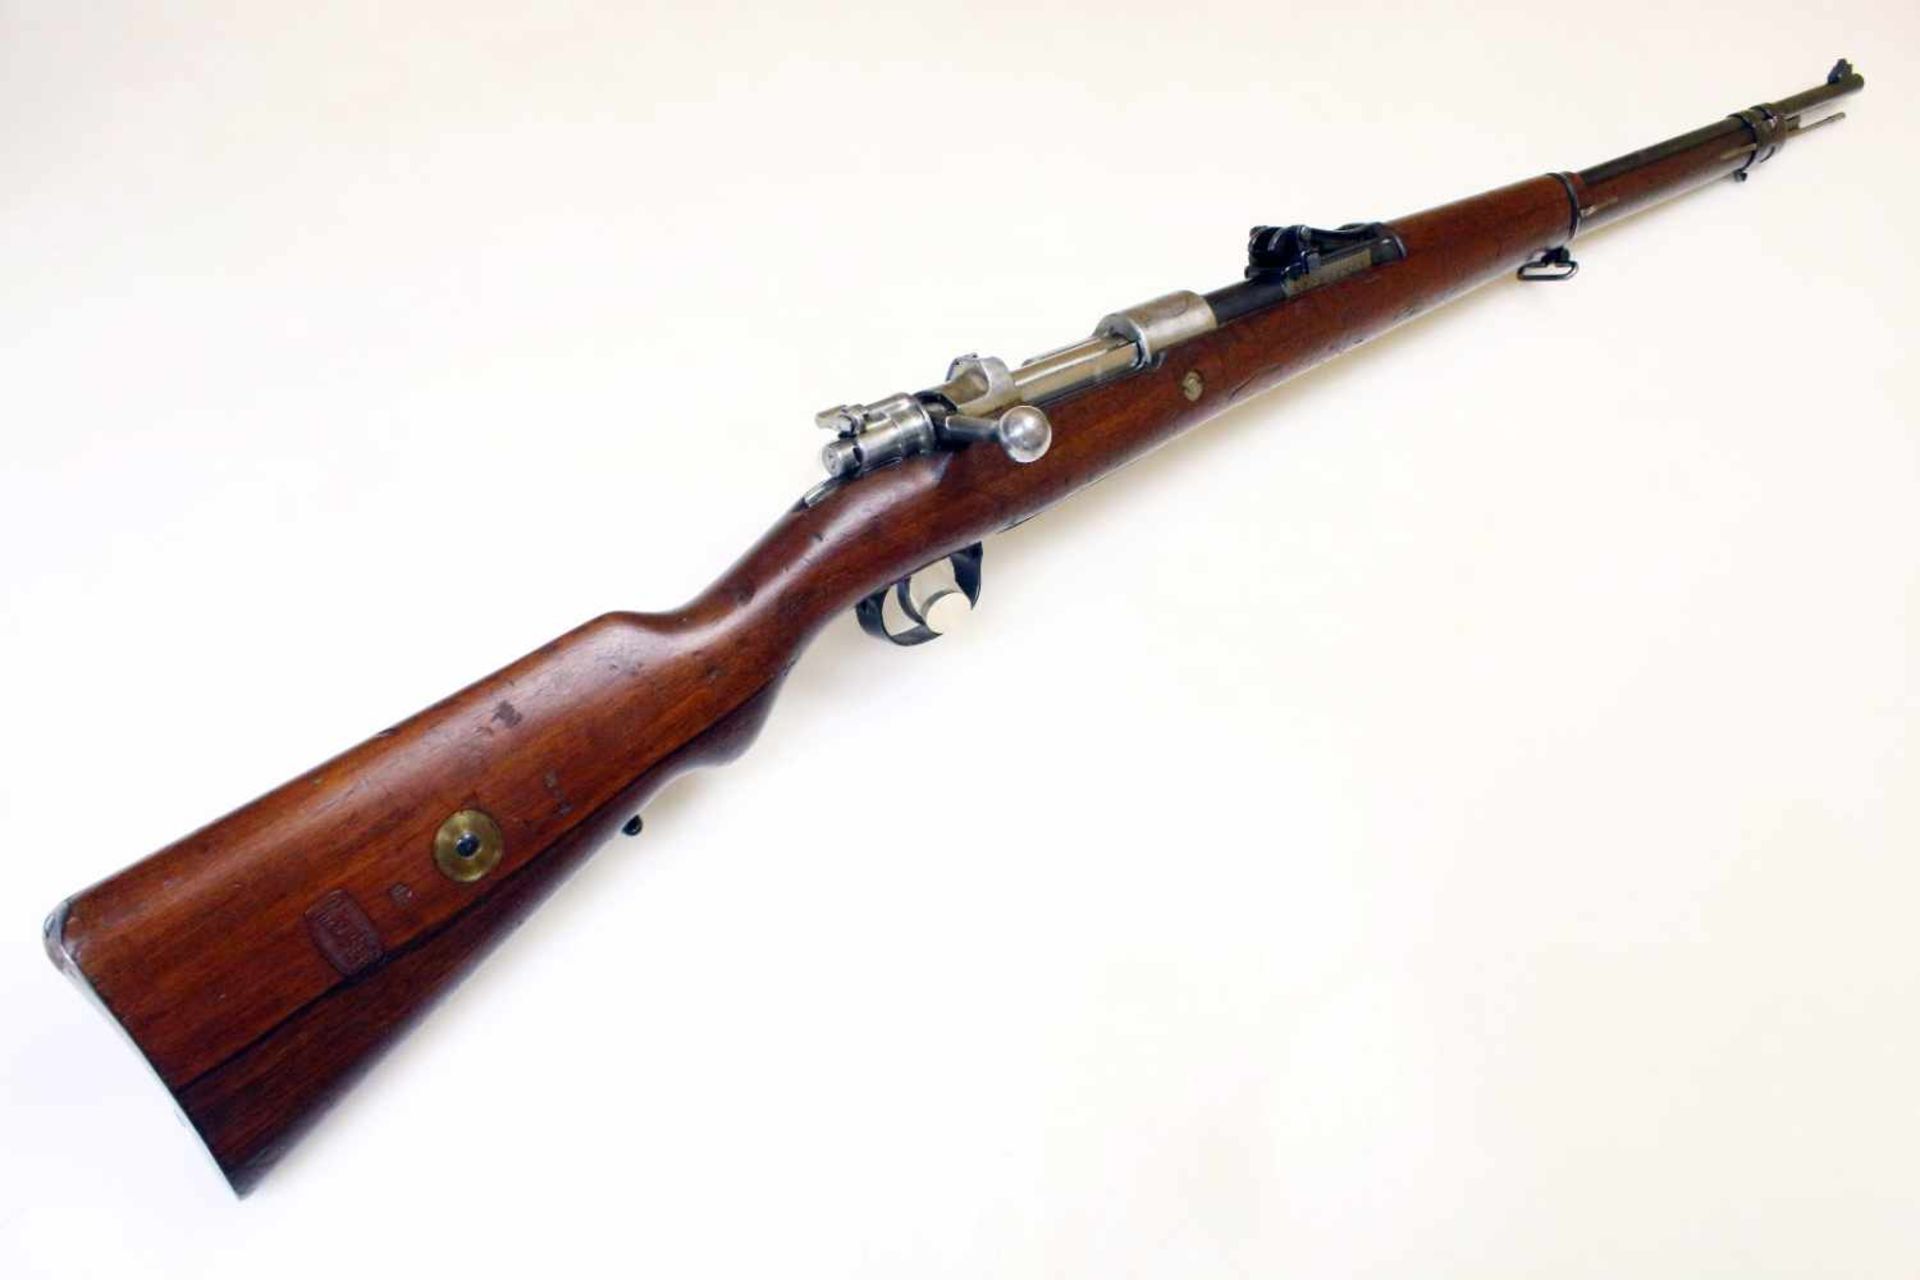 Mausergewehr M1909 Peru Cal. 7,65 x 53mm, Lauf rauh, narbig. Auf der Hülse das peruanische Wappen